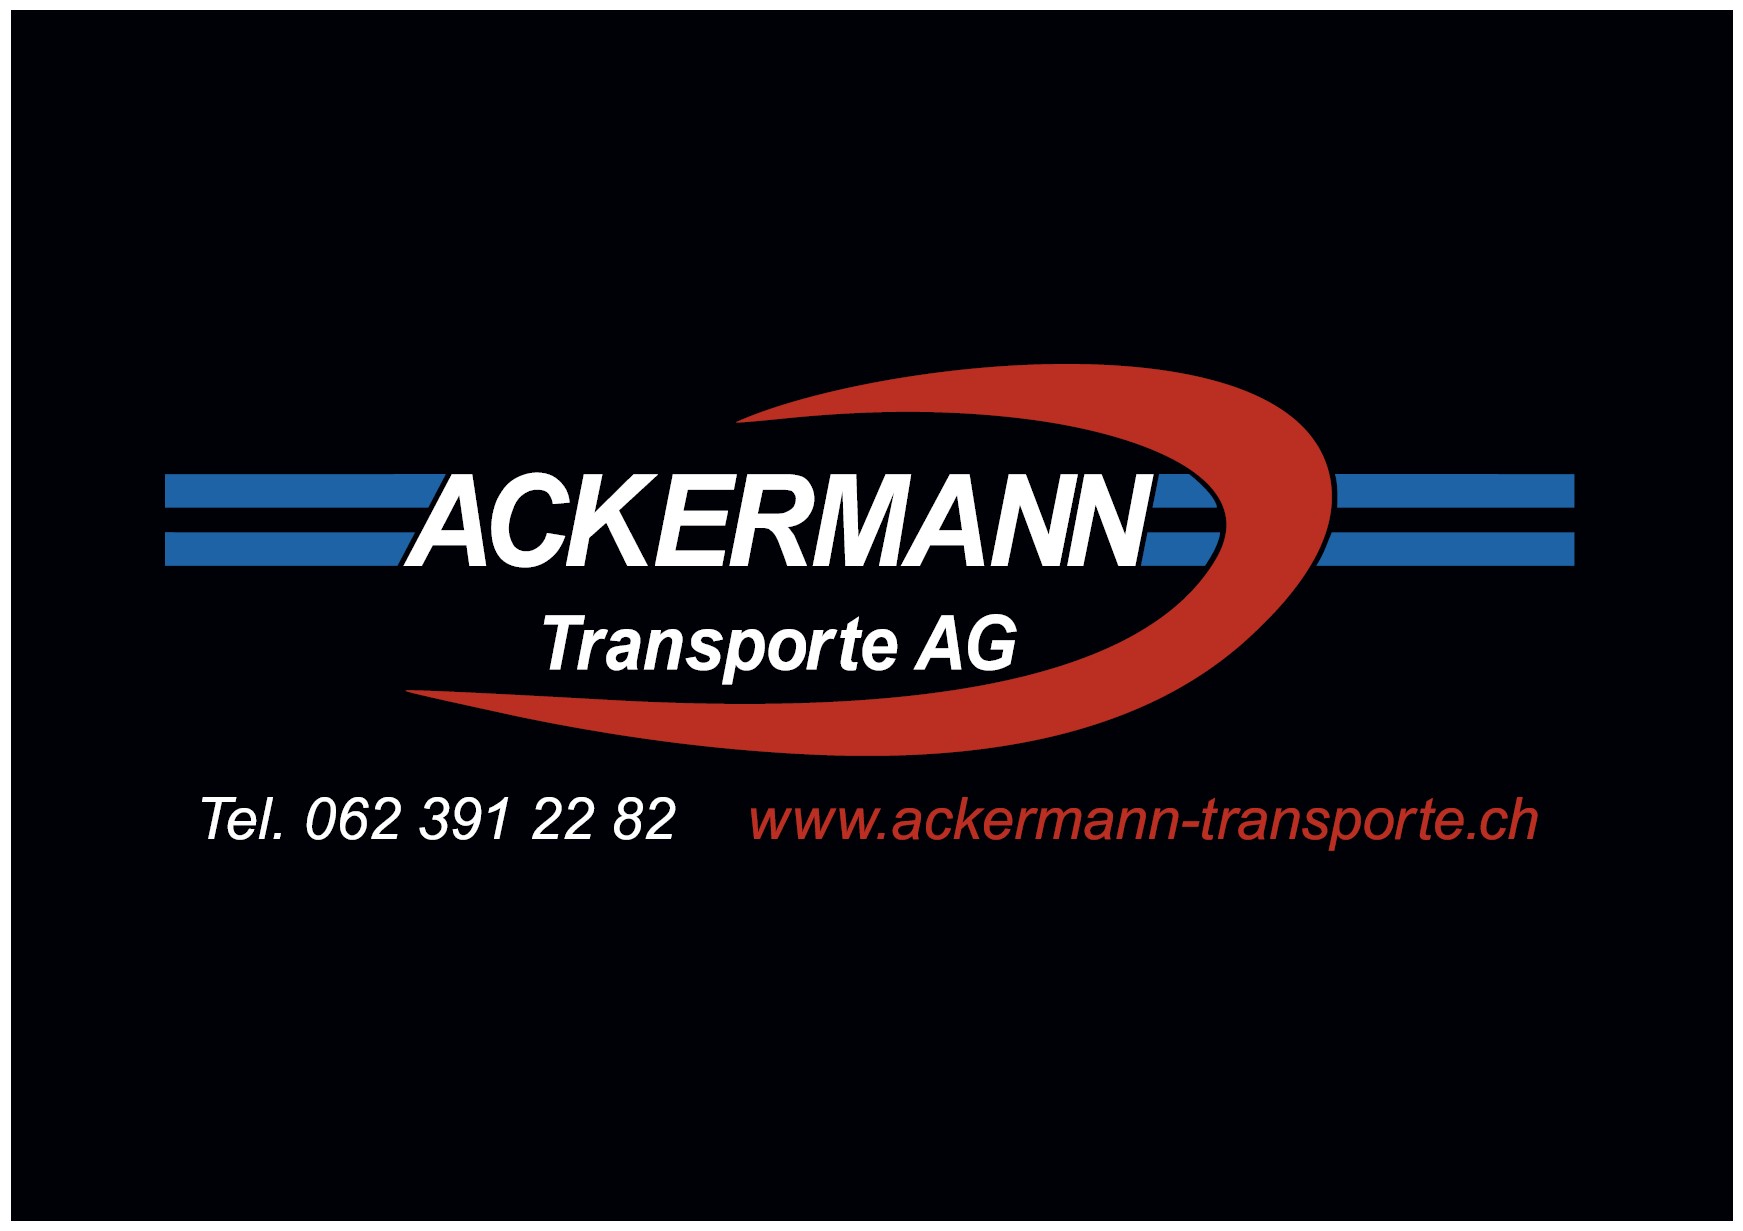 Ackermann Transport AG